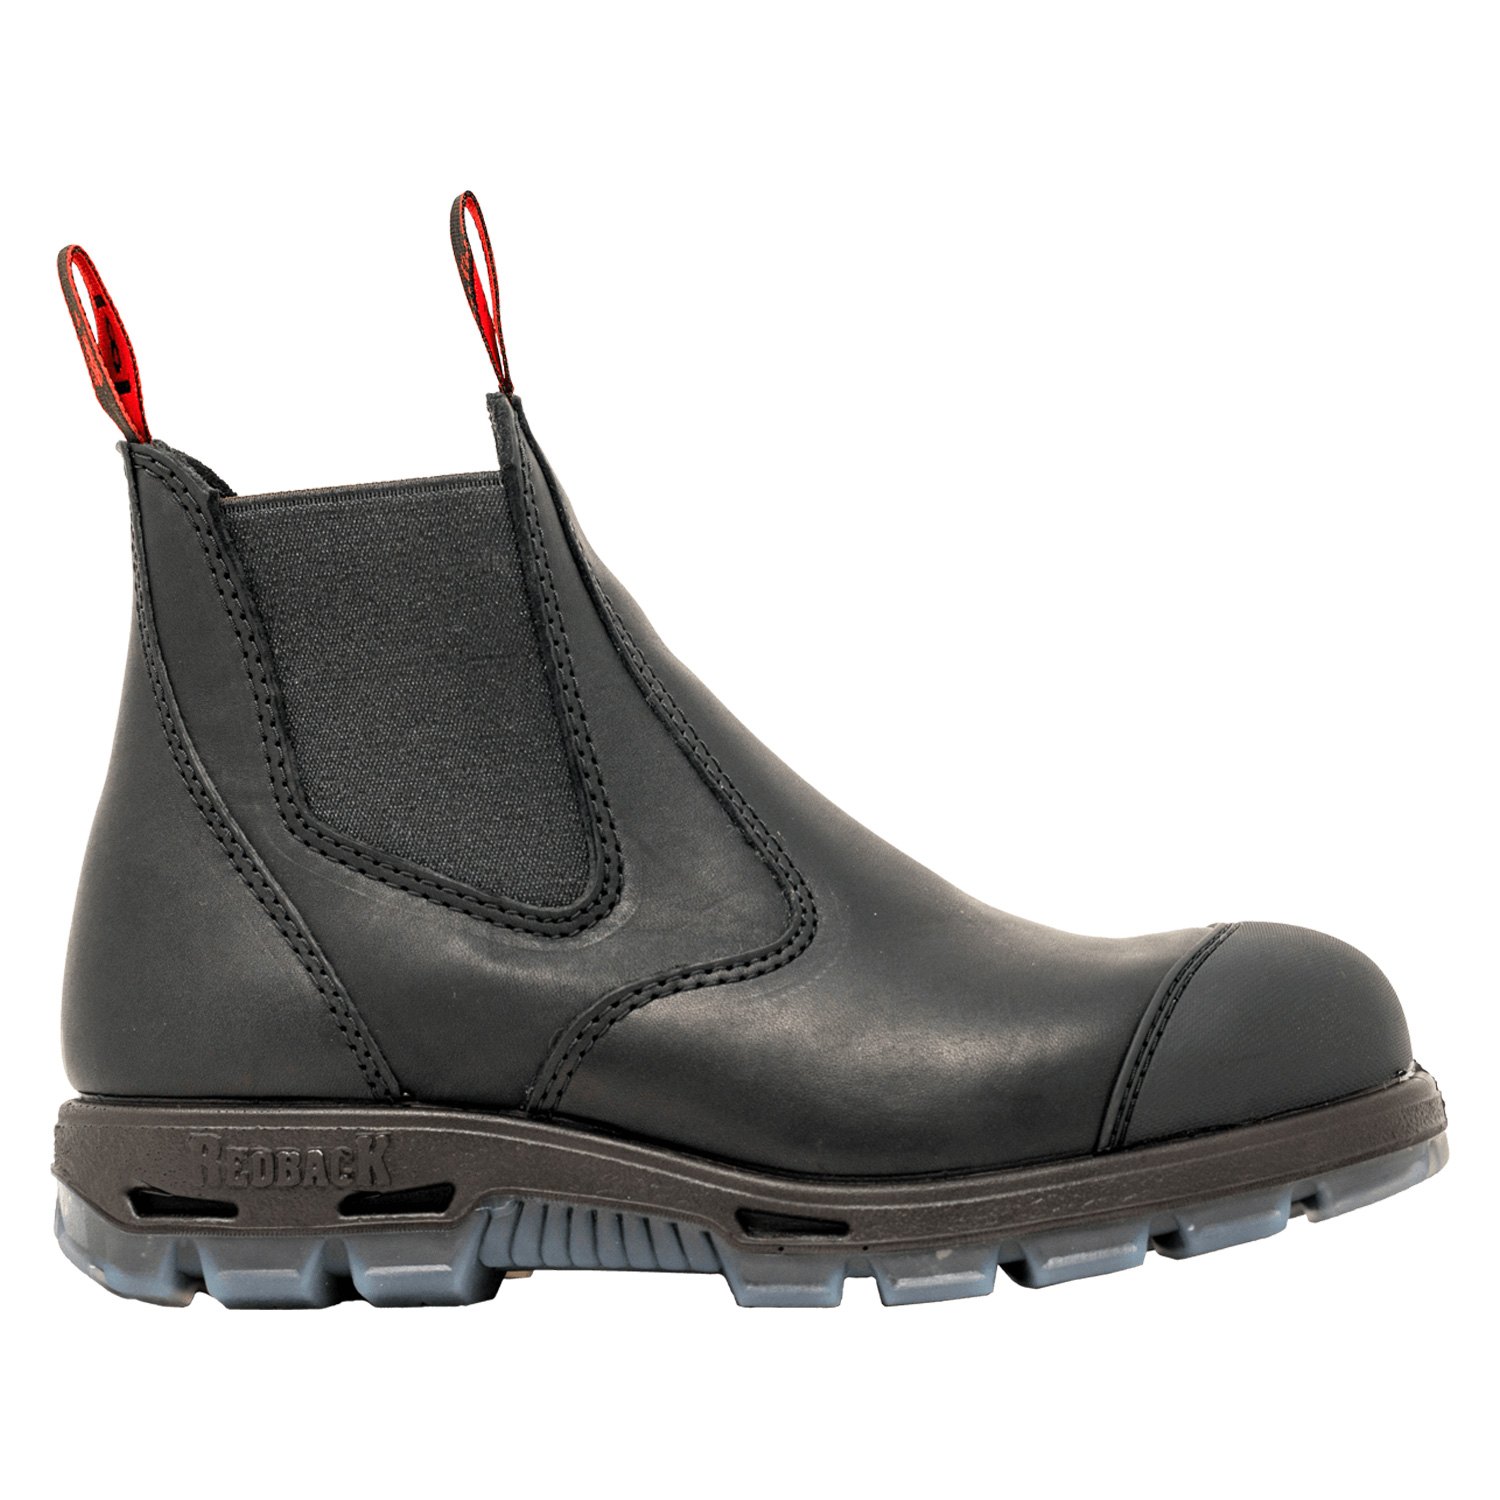 redback steel toe cap boots